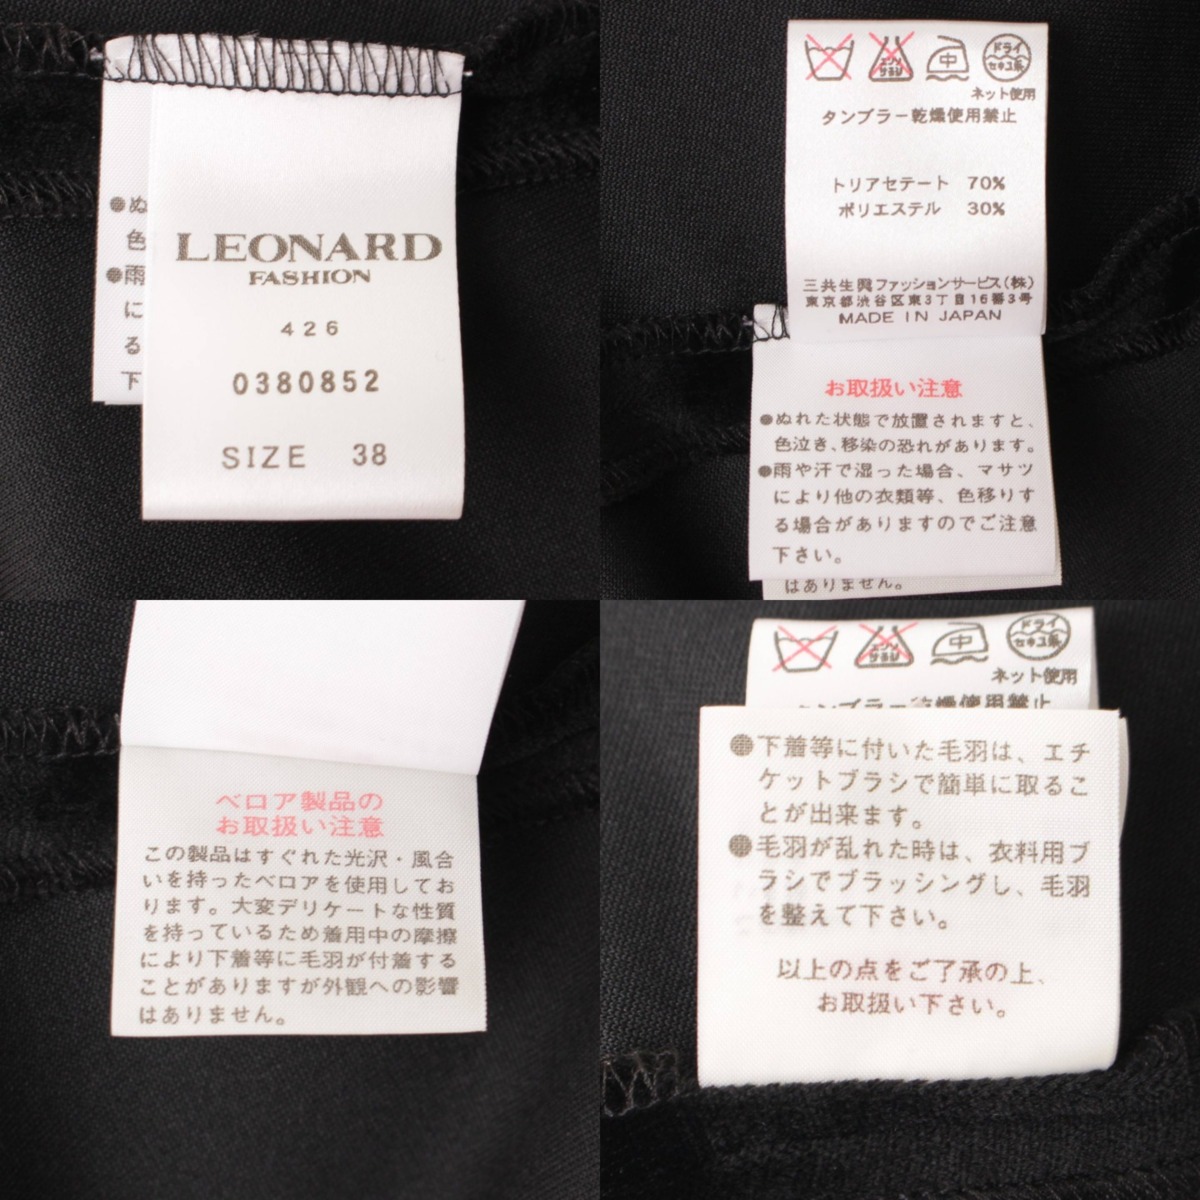 レオナール(LEONARD) ベロア ワンピース ドレス 0380852 ブラック×ピンク 38 中古 通販 retro レトロ